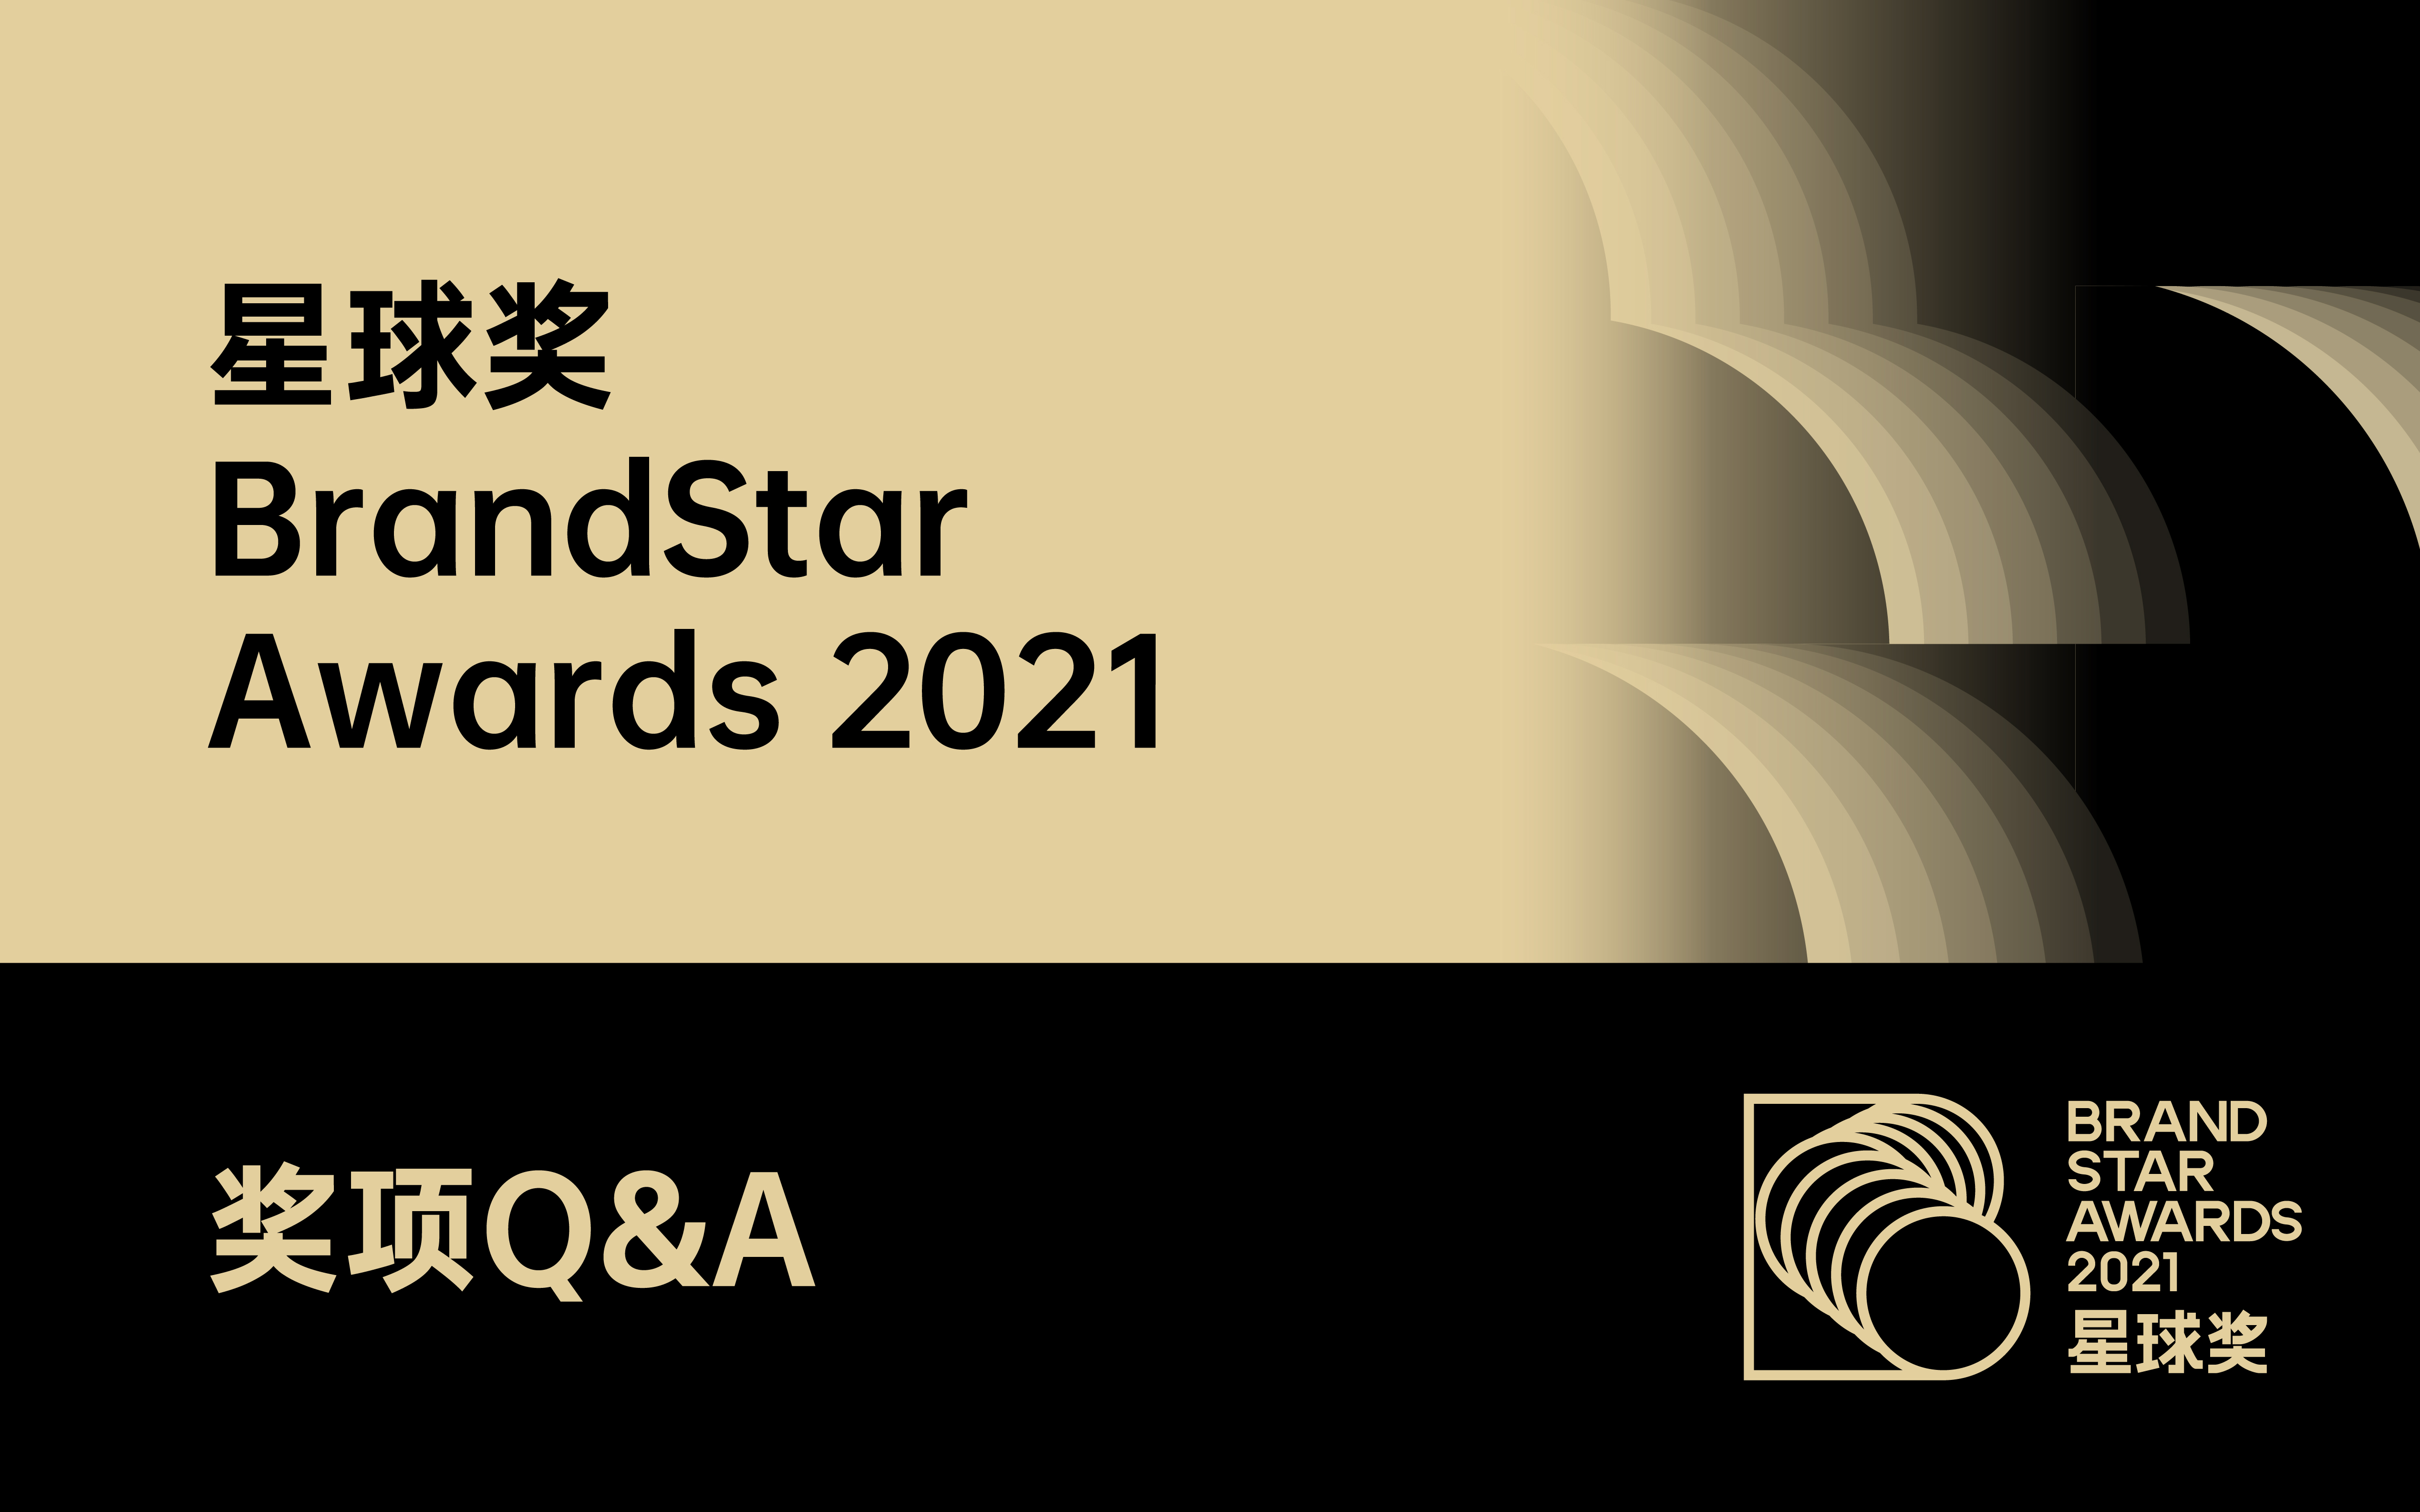 星球奖BrandStar Awards 申报 Q&A｜星球奖2021